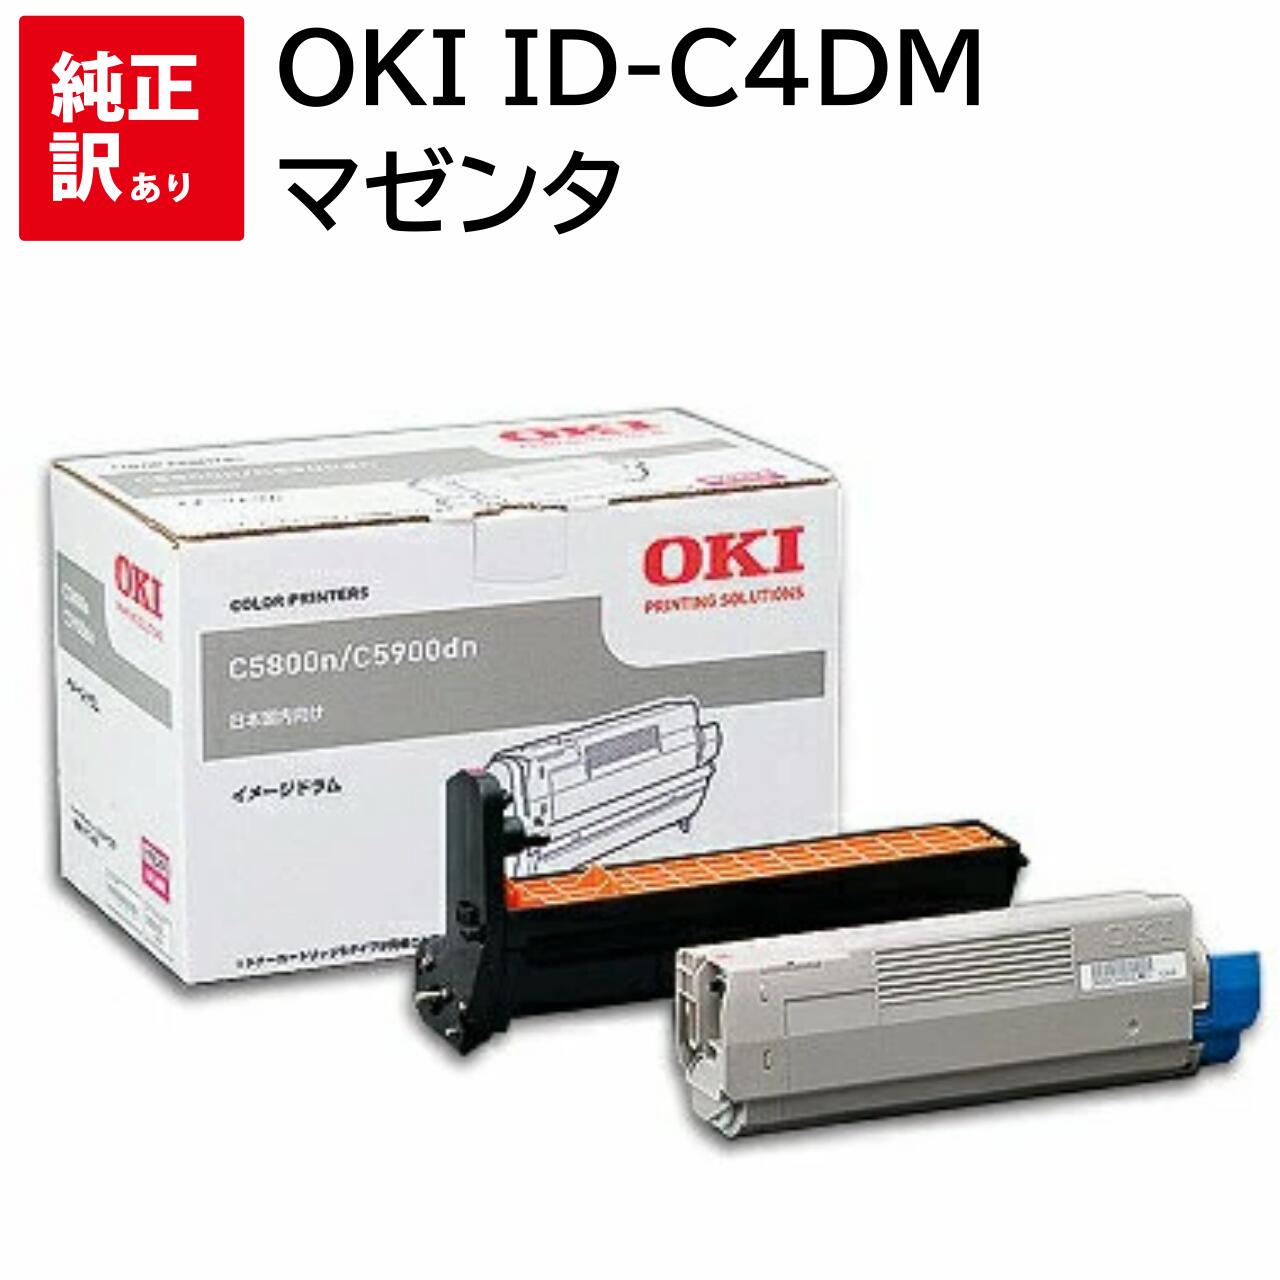 新品爆買い OKI ID-C3MM イメージドラム マゼンタ MC862dn-T/ 862dn